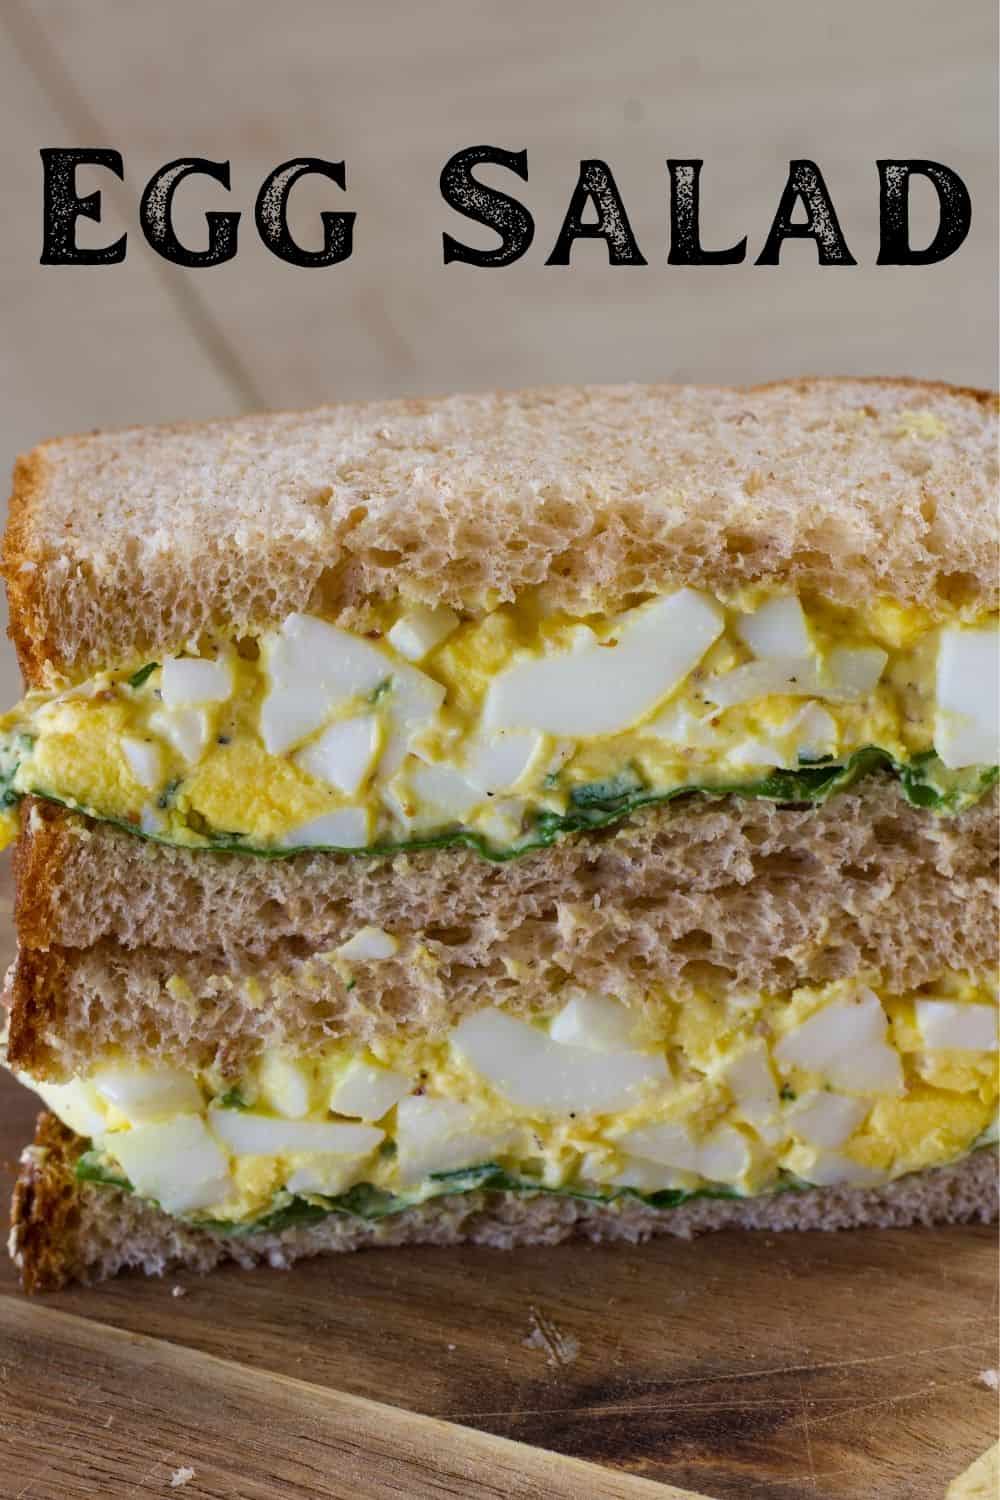 Egg Salad Recipe (Egg Salad Sandwiches) - JoyFoodSunshine